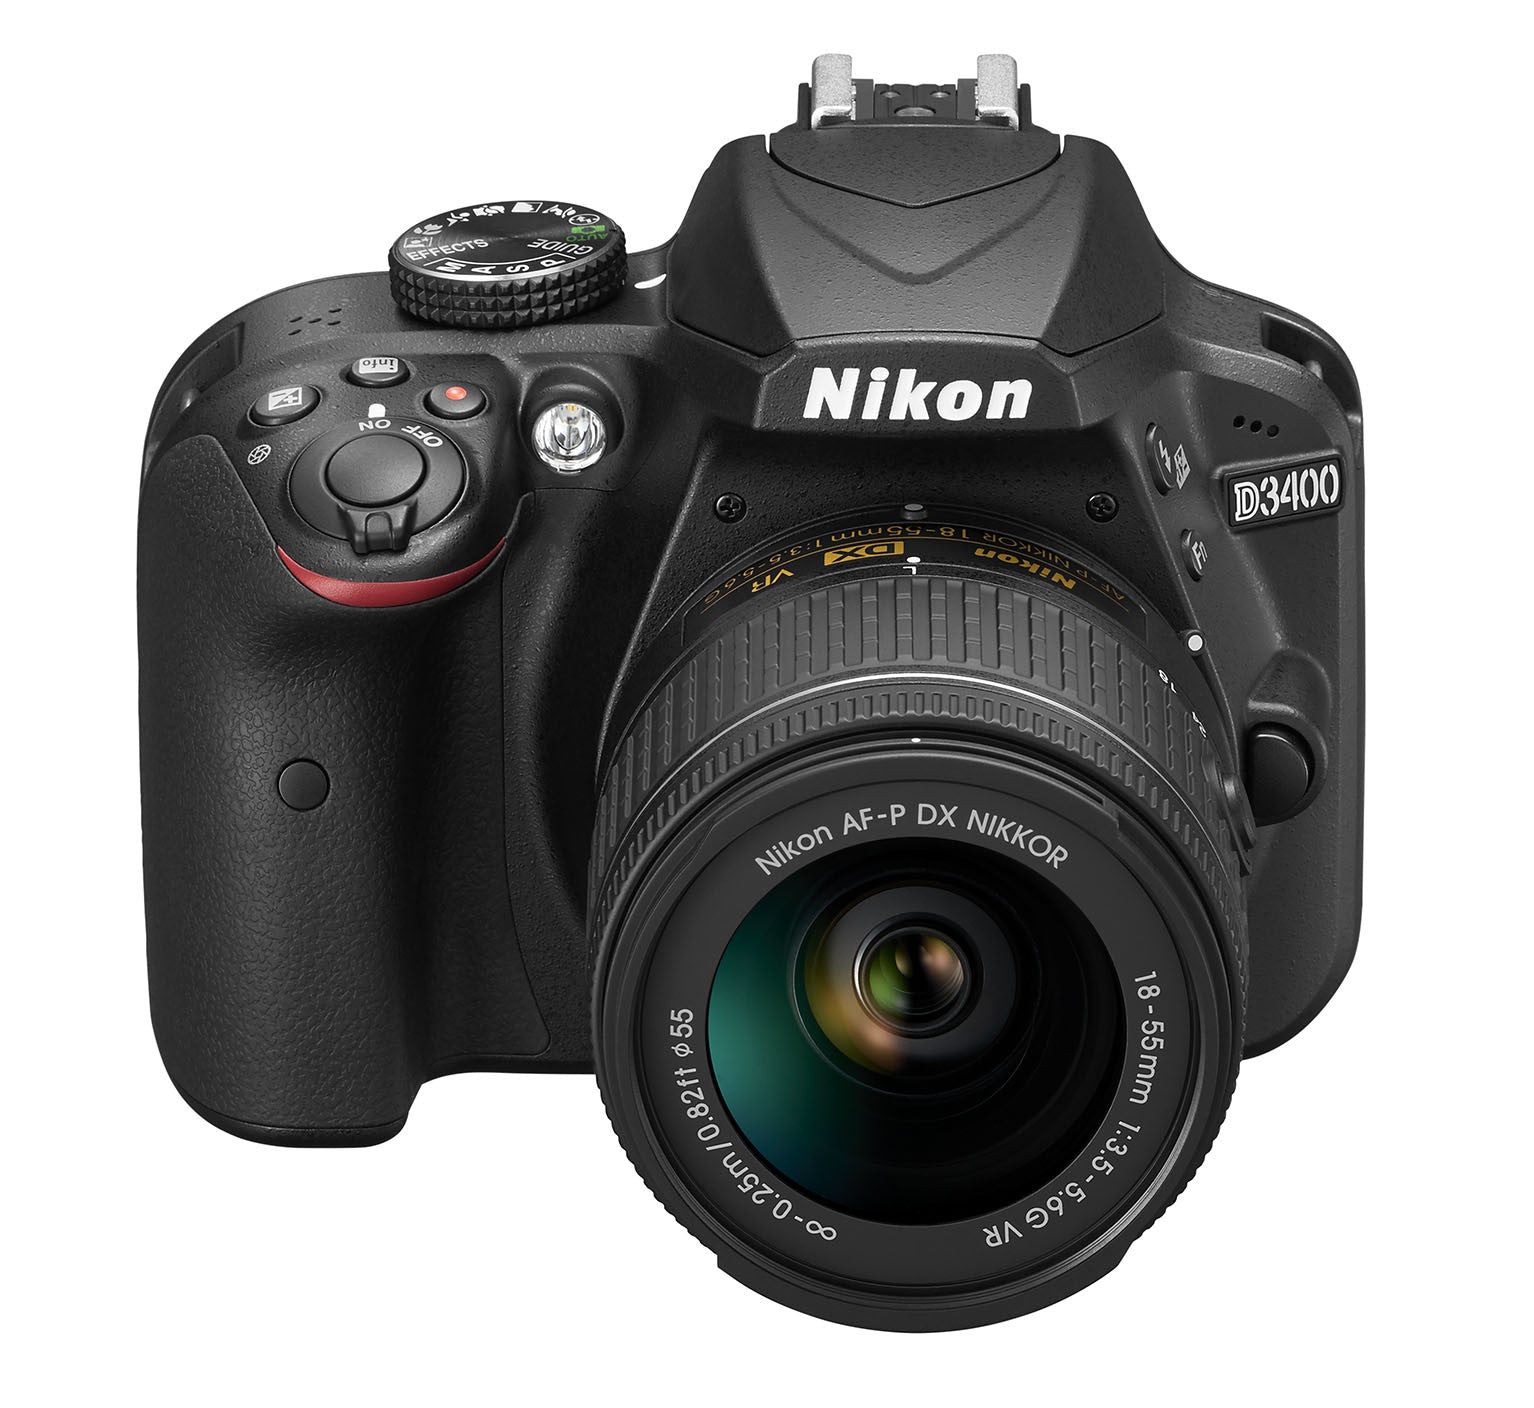 Nikon D3400 DX-format Digital SLR Kit w/ 18-55mm DX G VR Zoom Lens Black, camera dslr cameras, Nikon - Pictureline  - 3